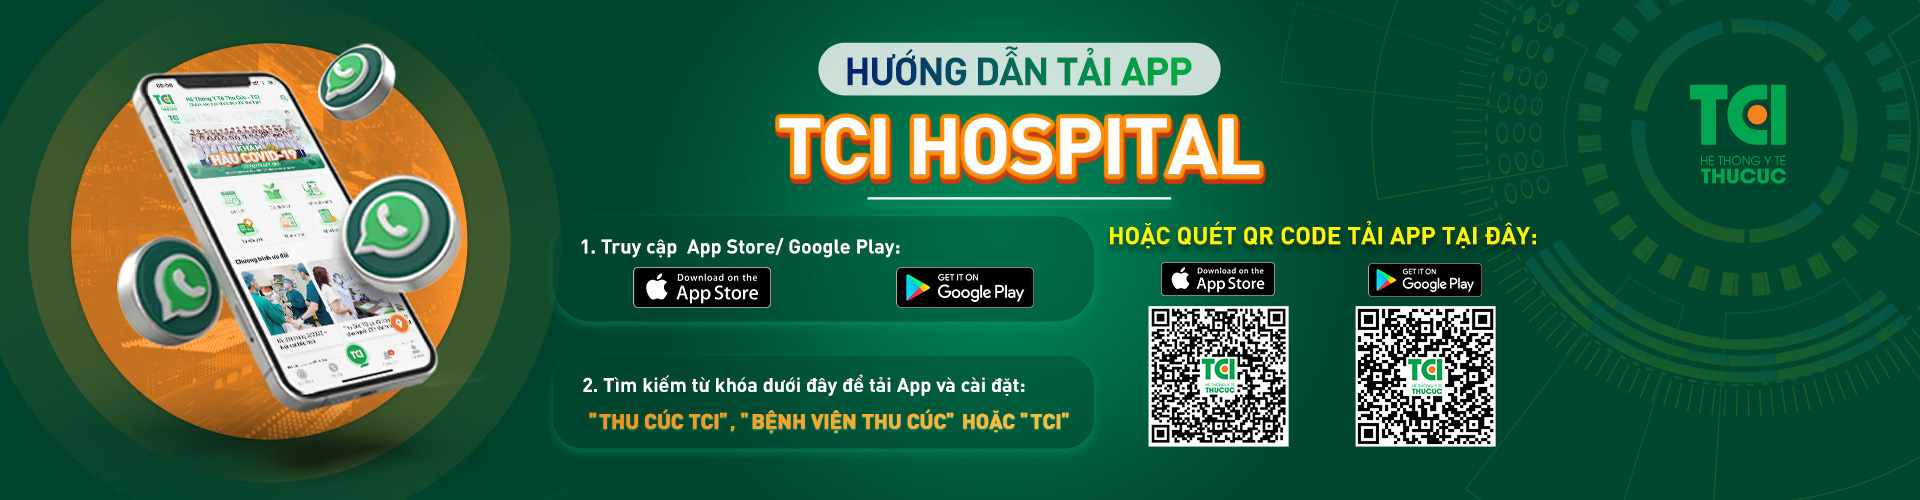 banner huong dan tai app tci hospital